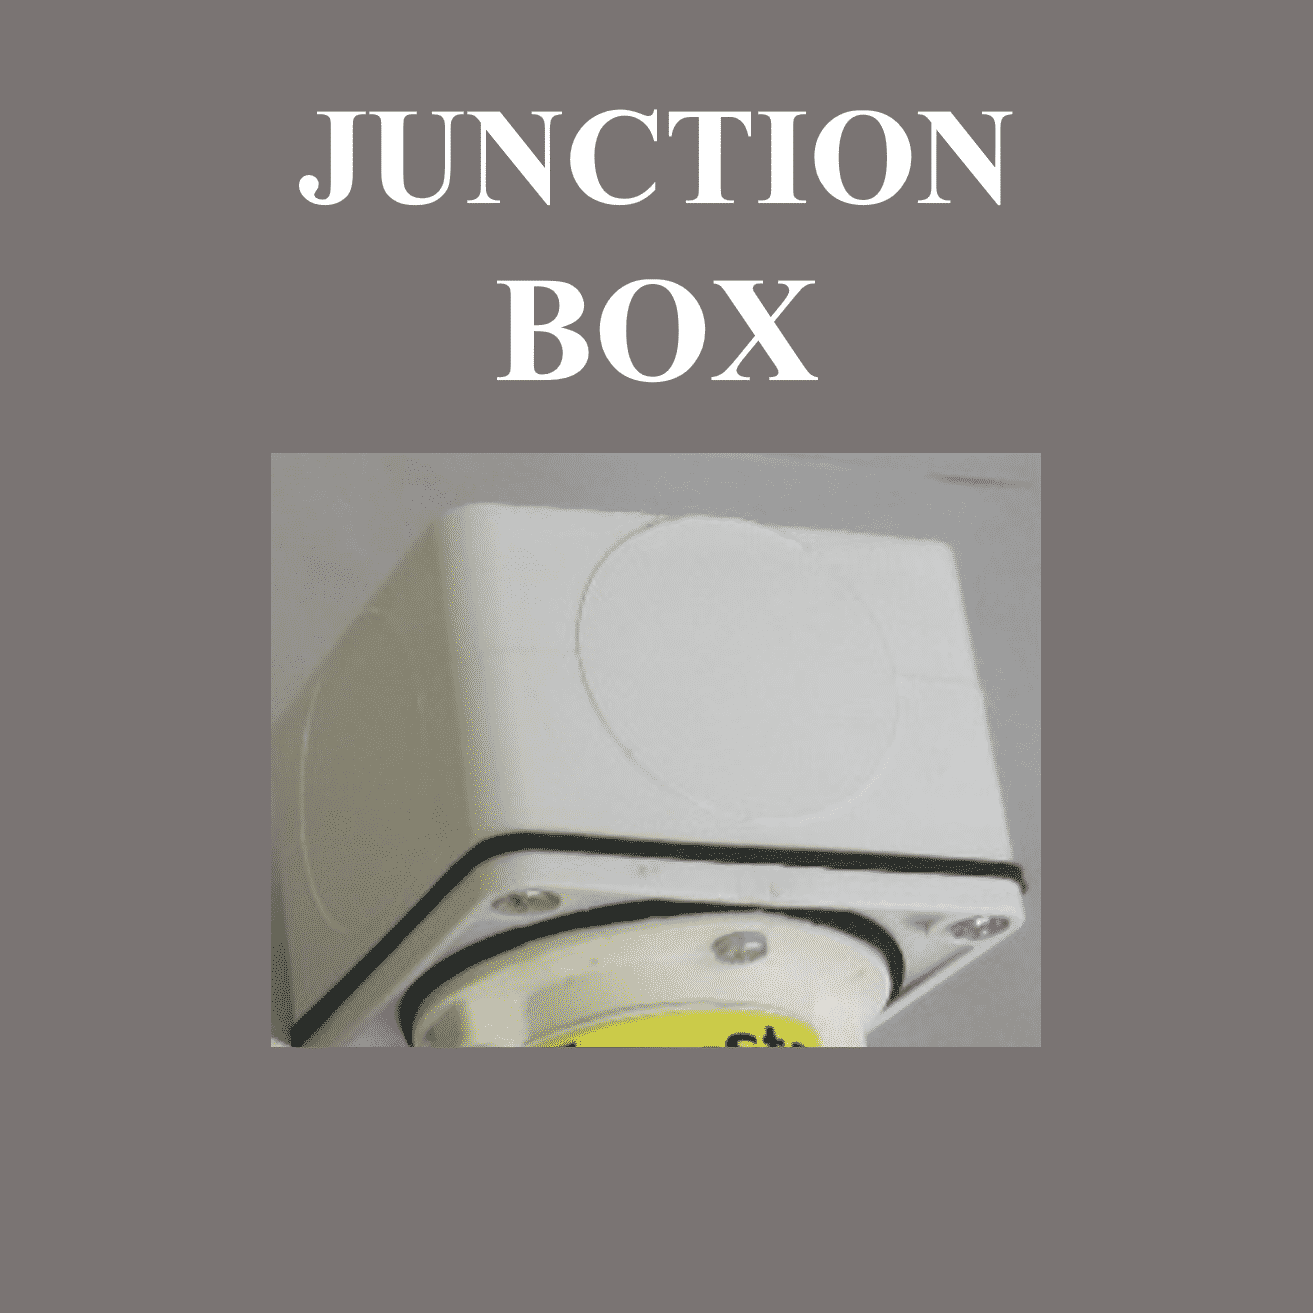 306 junction box for tstart